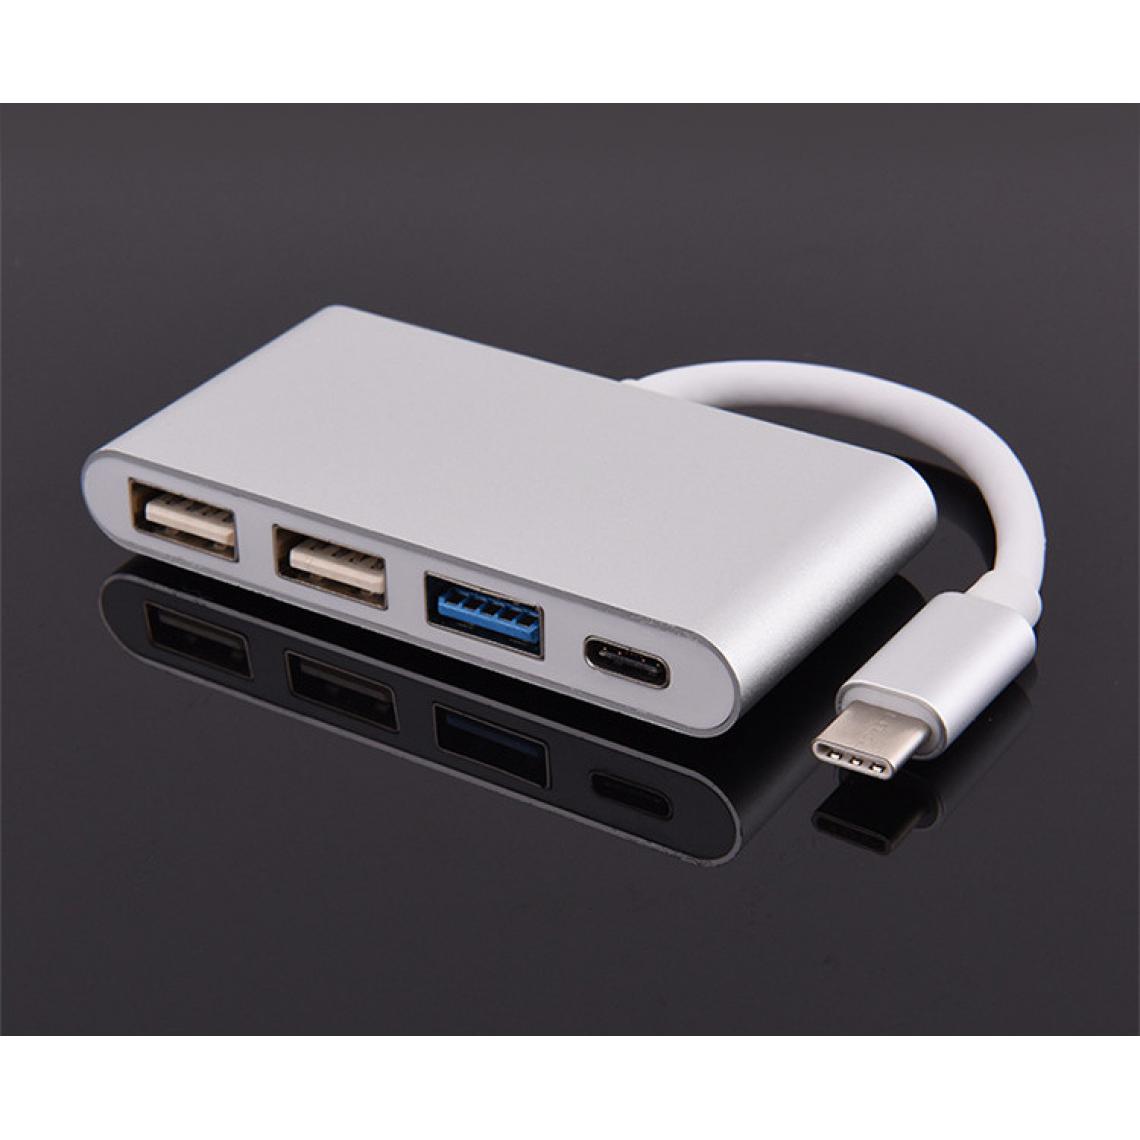 Shot - Multi Adaptateur 4 en 1 Type C pour LeEco Le 2 Pro Smartphone Hub 2 ports USB 2.0 1 Port USB 3.0 (ARGENT) - Hub